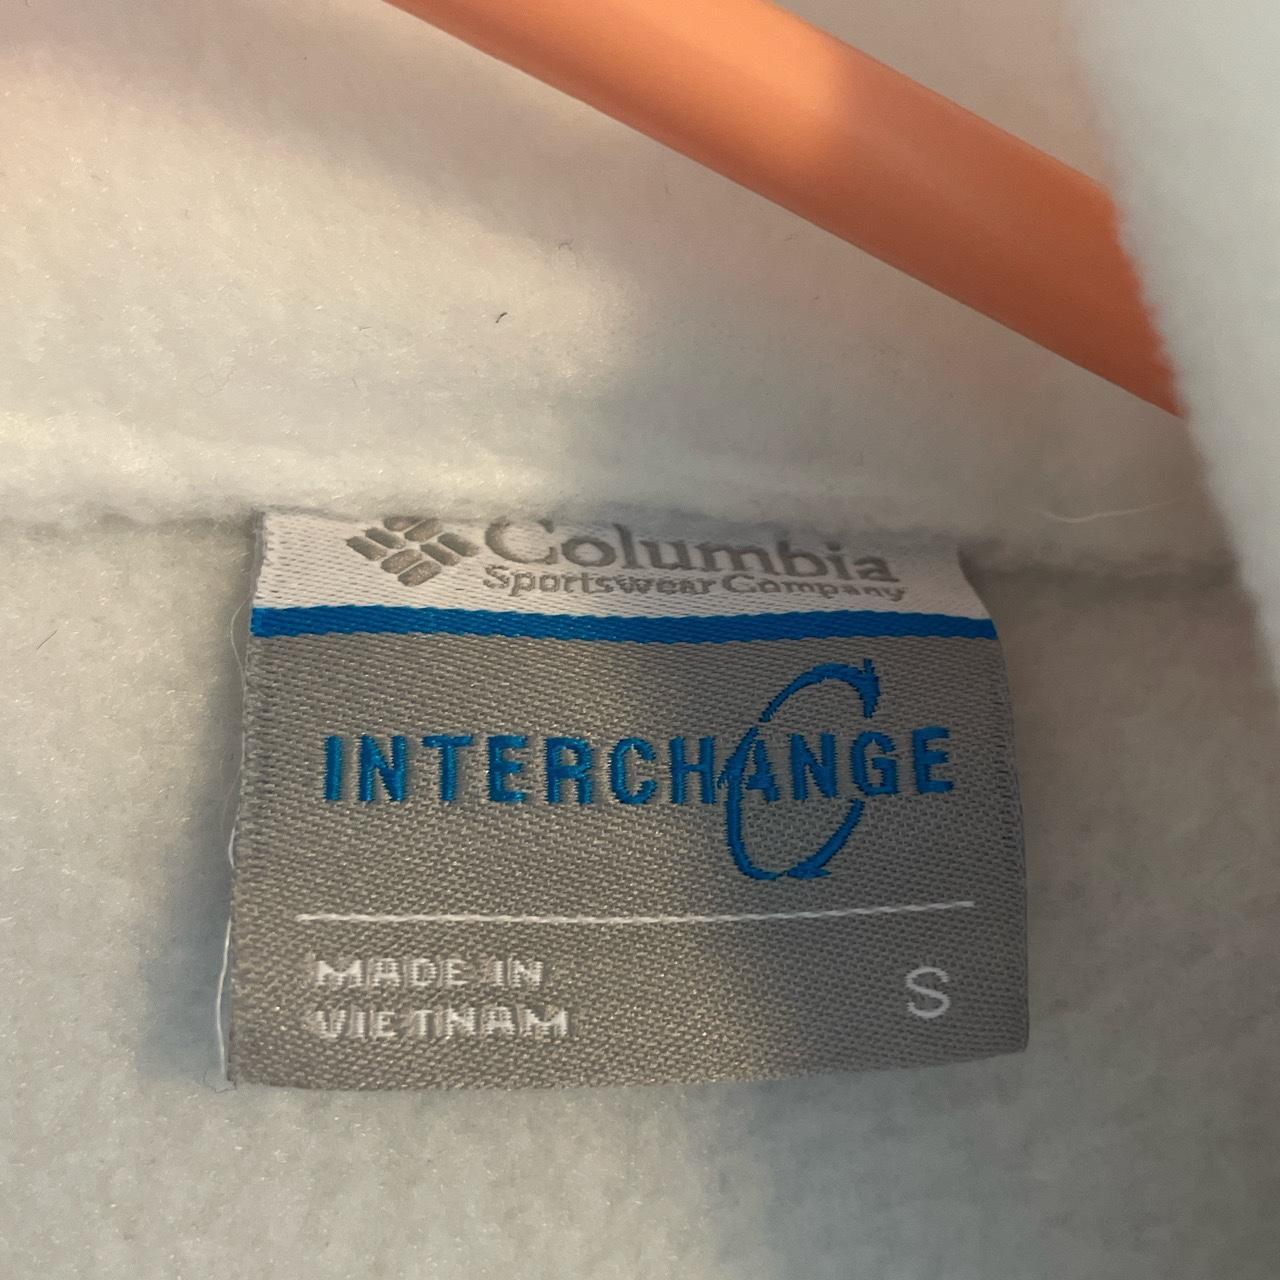 Columbia Women's Interchange Jacket with Soft - Depop